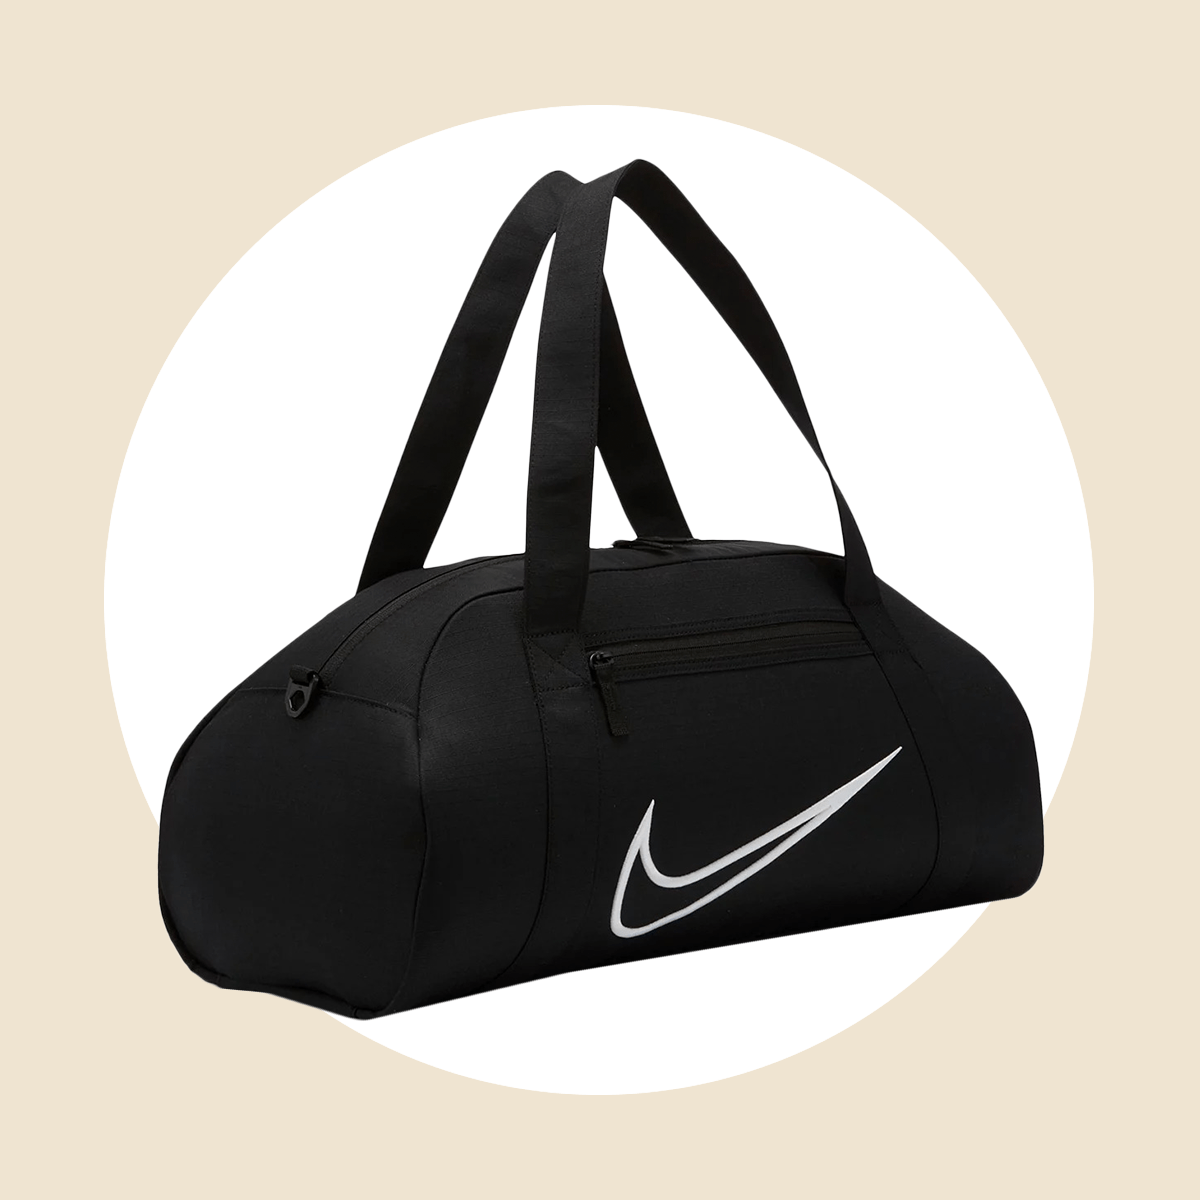 Nike Gym Club Training Duffel Bag Ecomm Via Kohls